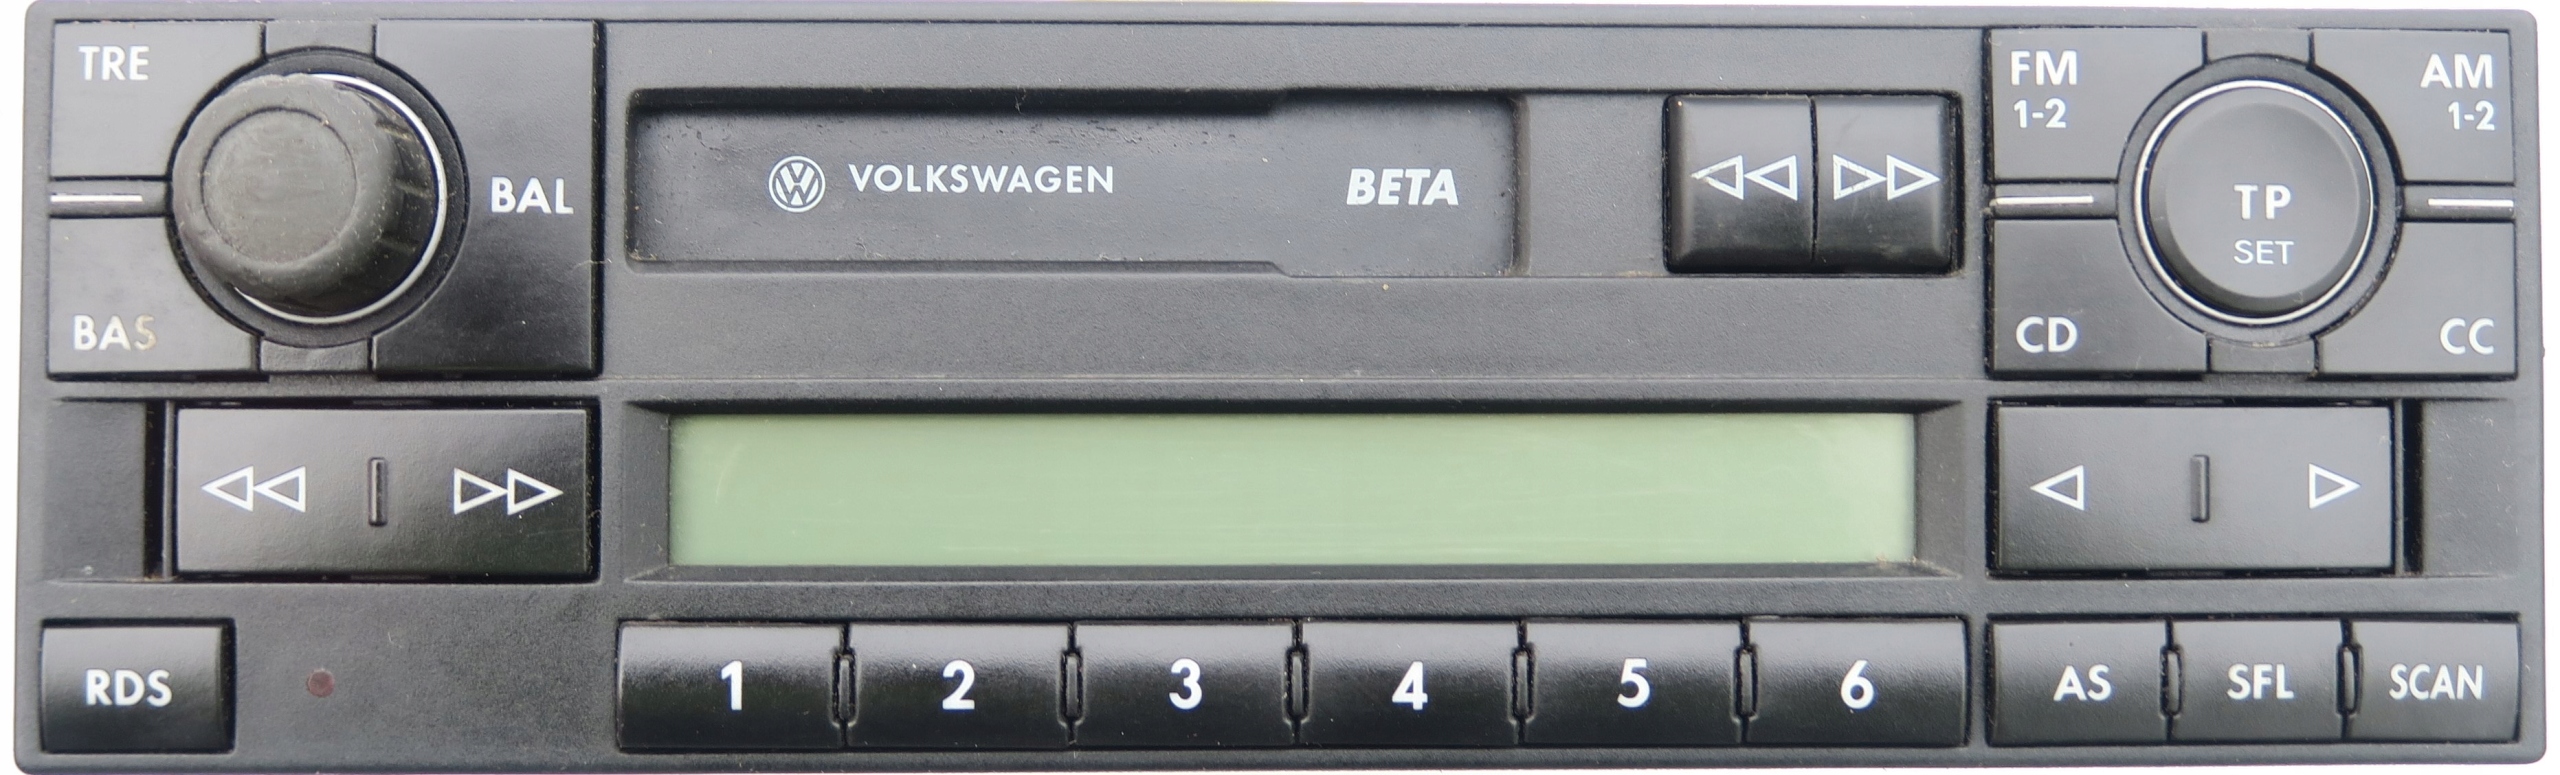 VW Golf 4 Variant Autoradio Radio Volkswagen Beta V 1J0035152E